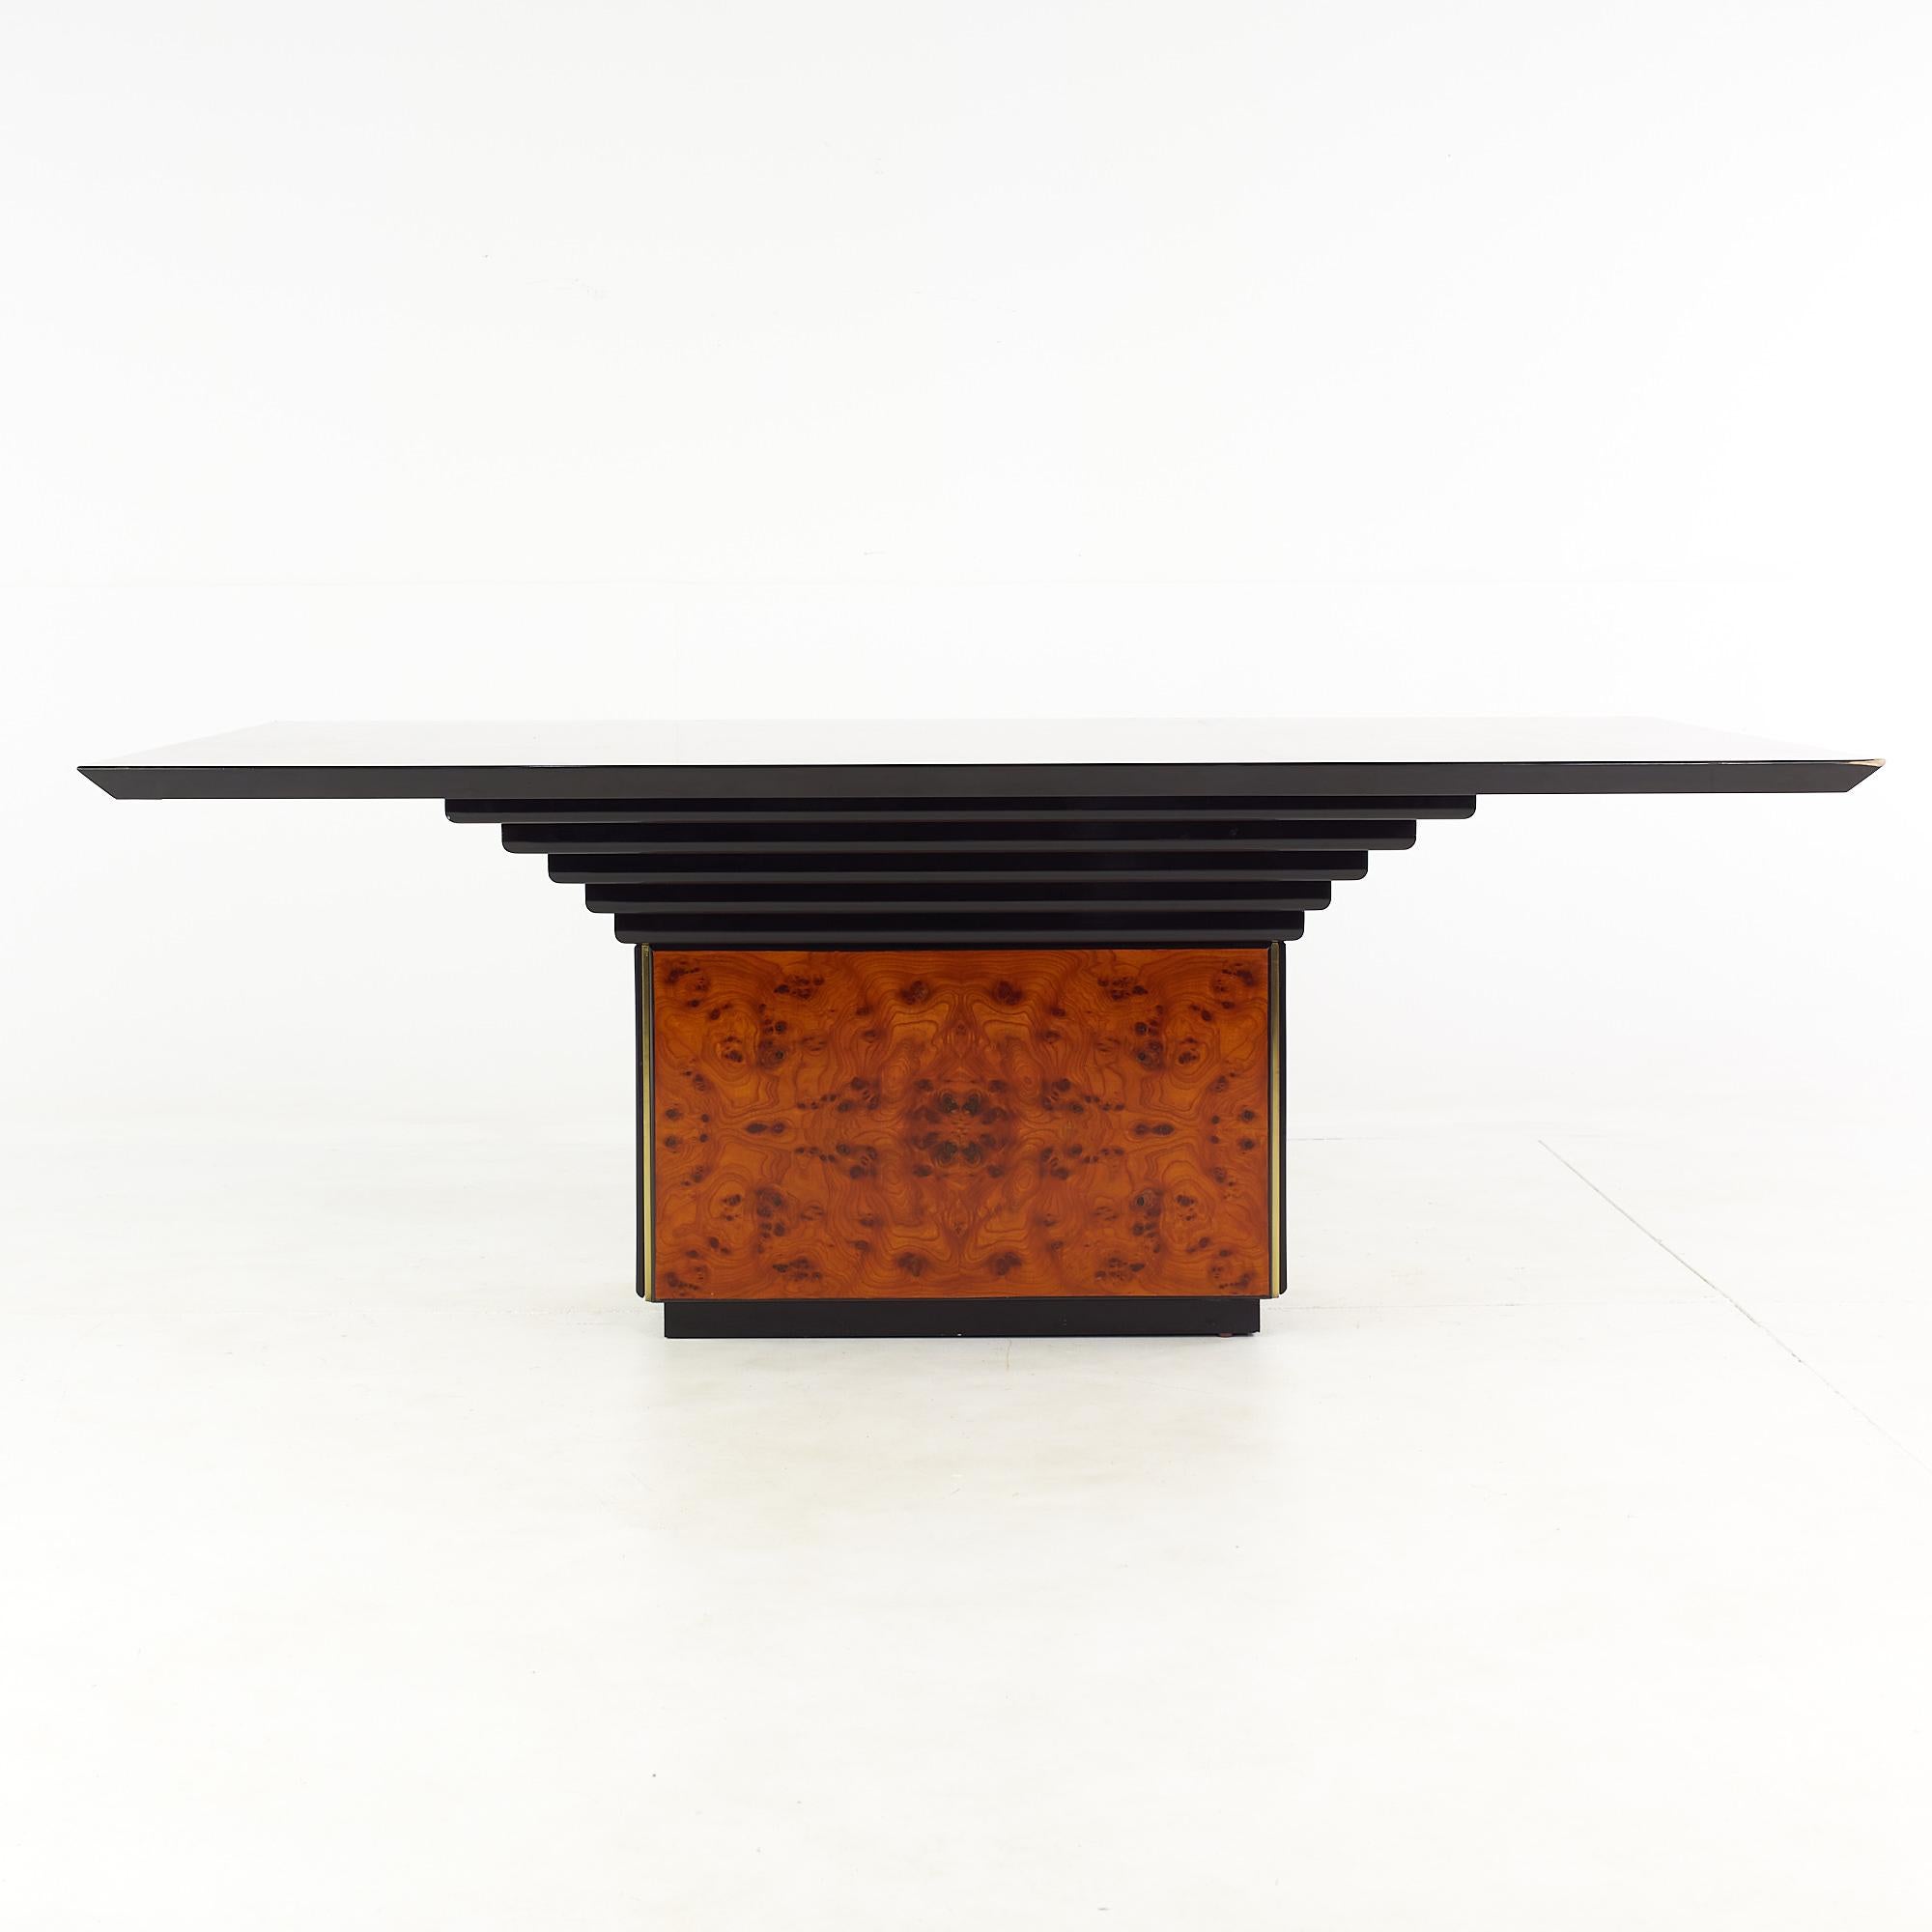 Roche Bobois Esstisch aus Wurzelholz aus der Mitte des Jahrhunderts.

Dieser Tisch misst: 79 breit x 47 tief x 29 Zoll hoch mit Stuhl Abstand von 27 Zoll.

Alle Möbelstücke sind in einem so genannten restaurierten Vintage-Zustand zu haben. Das